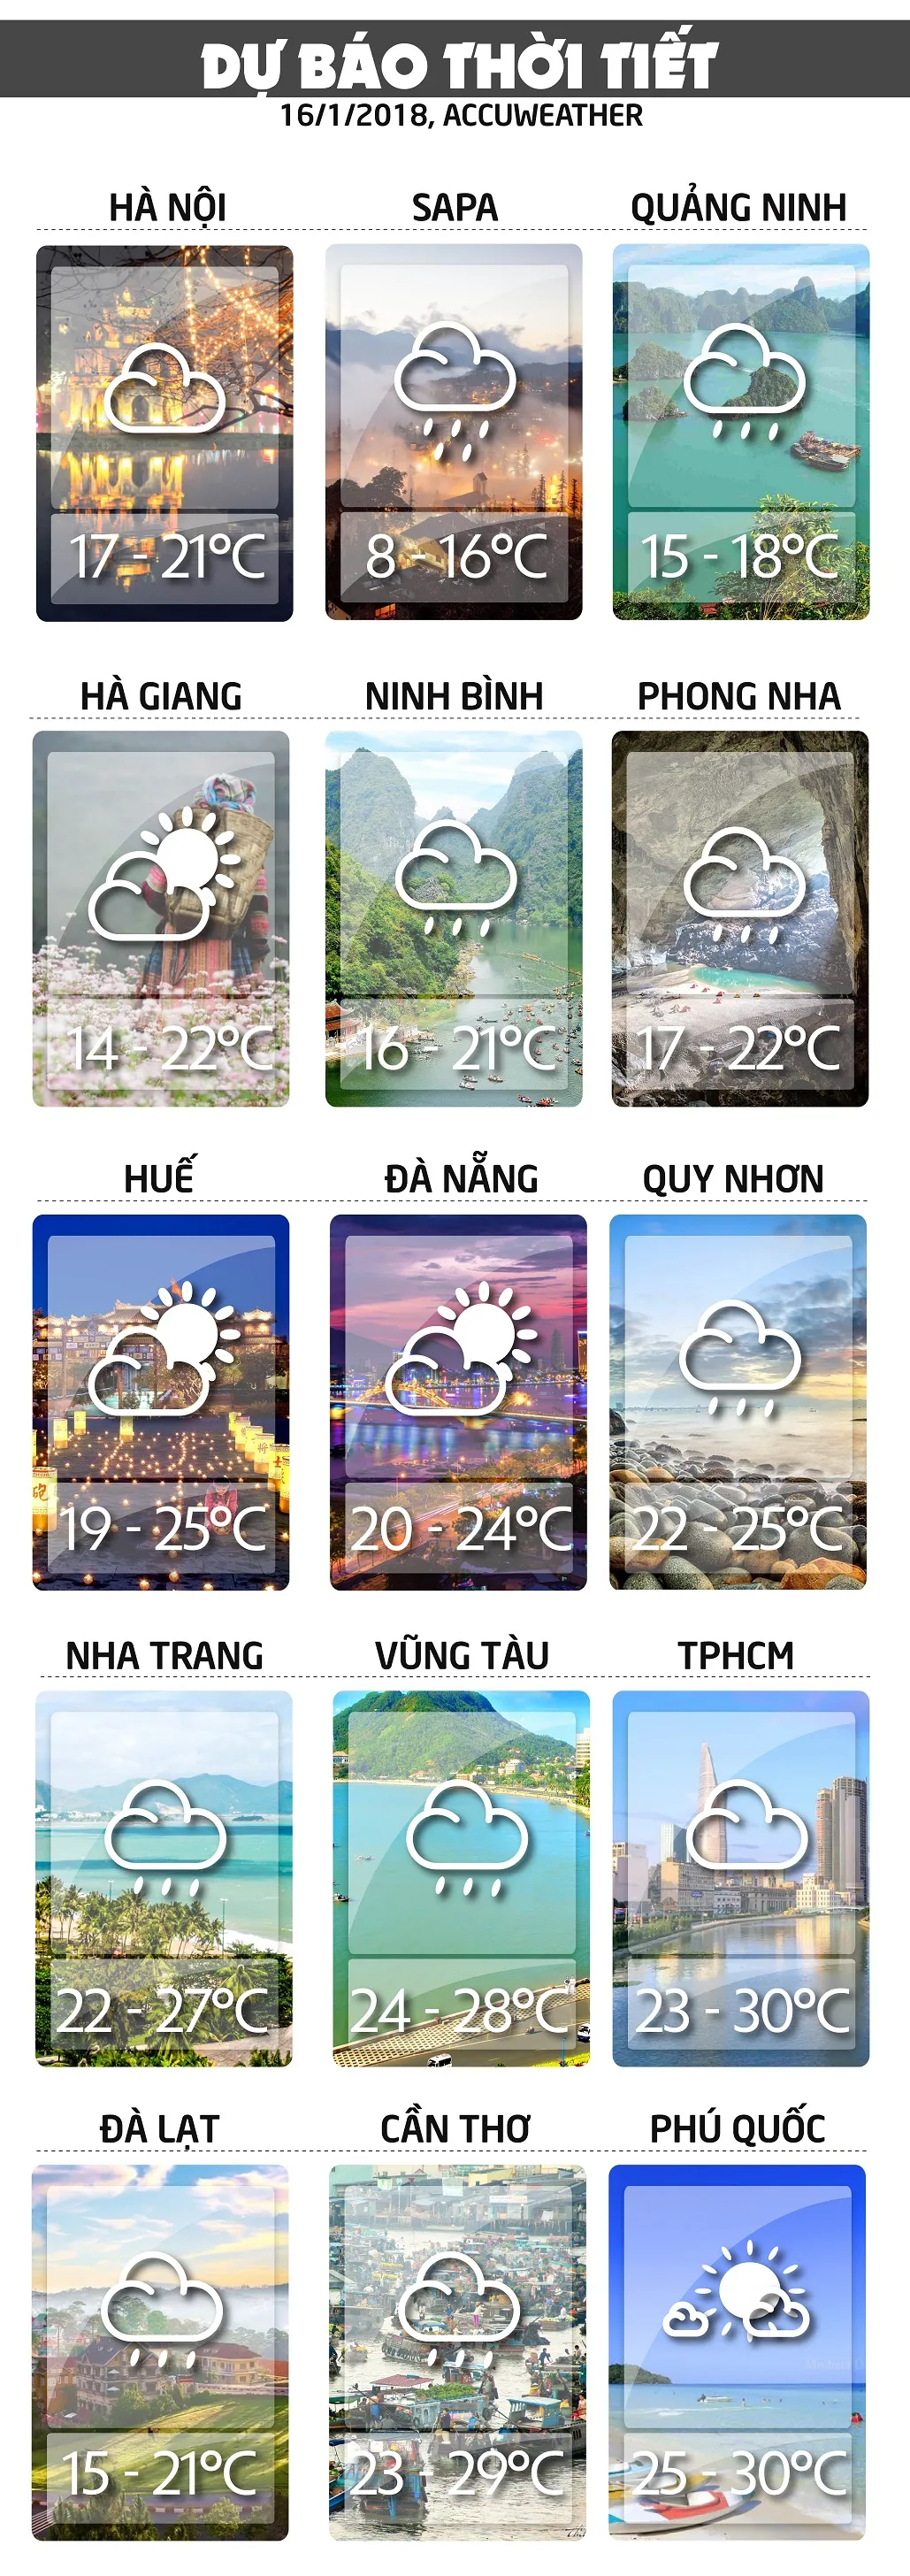 Dự báo thời tiết ngày mai 16/1: Bắc bộ mưa vài nơi, thủy điện xả nước phục vụ đổ ải voh.com.vn